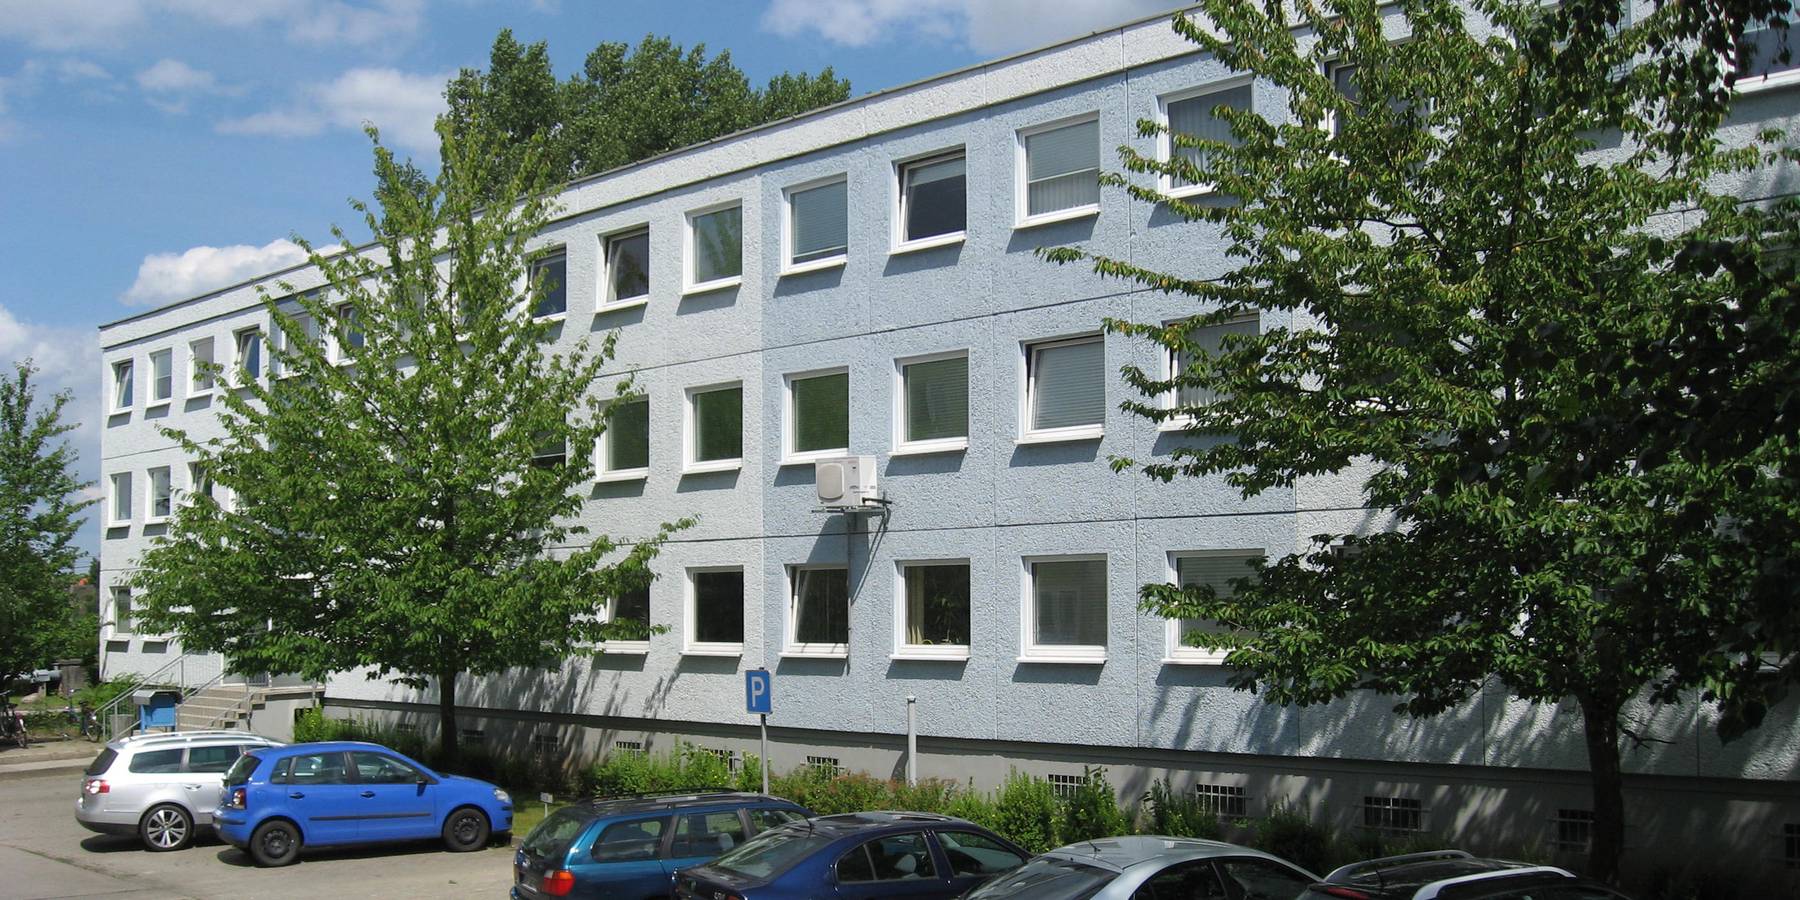 Hier, Am Gorzberg im Haus 8 ist ab 2020 das SBL Greifswald untergebracht. © 2019 Betrieb für Bau und Liegenschaften Mecklenburg-Vorpommern